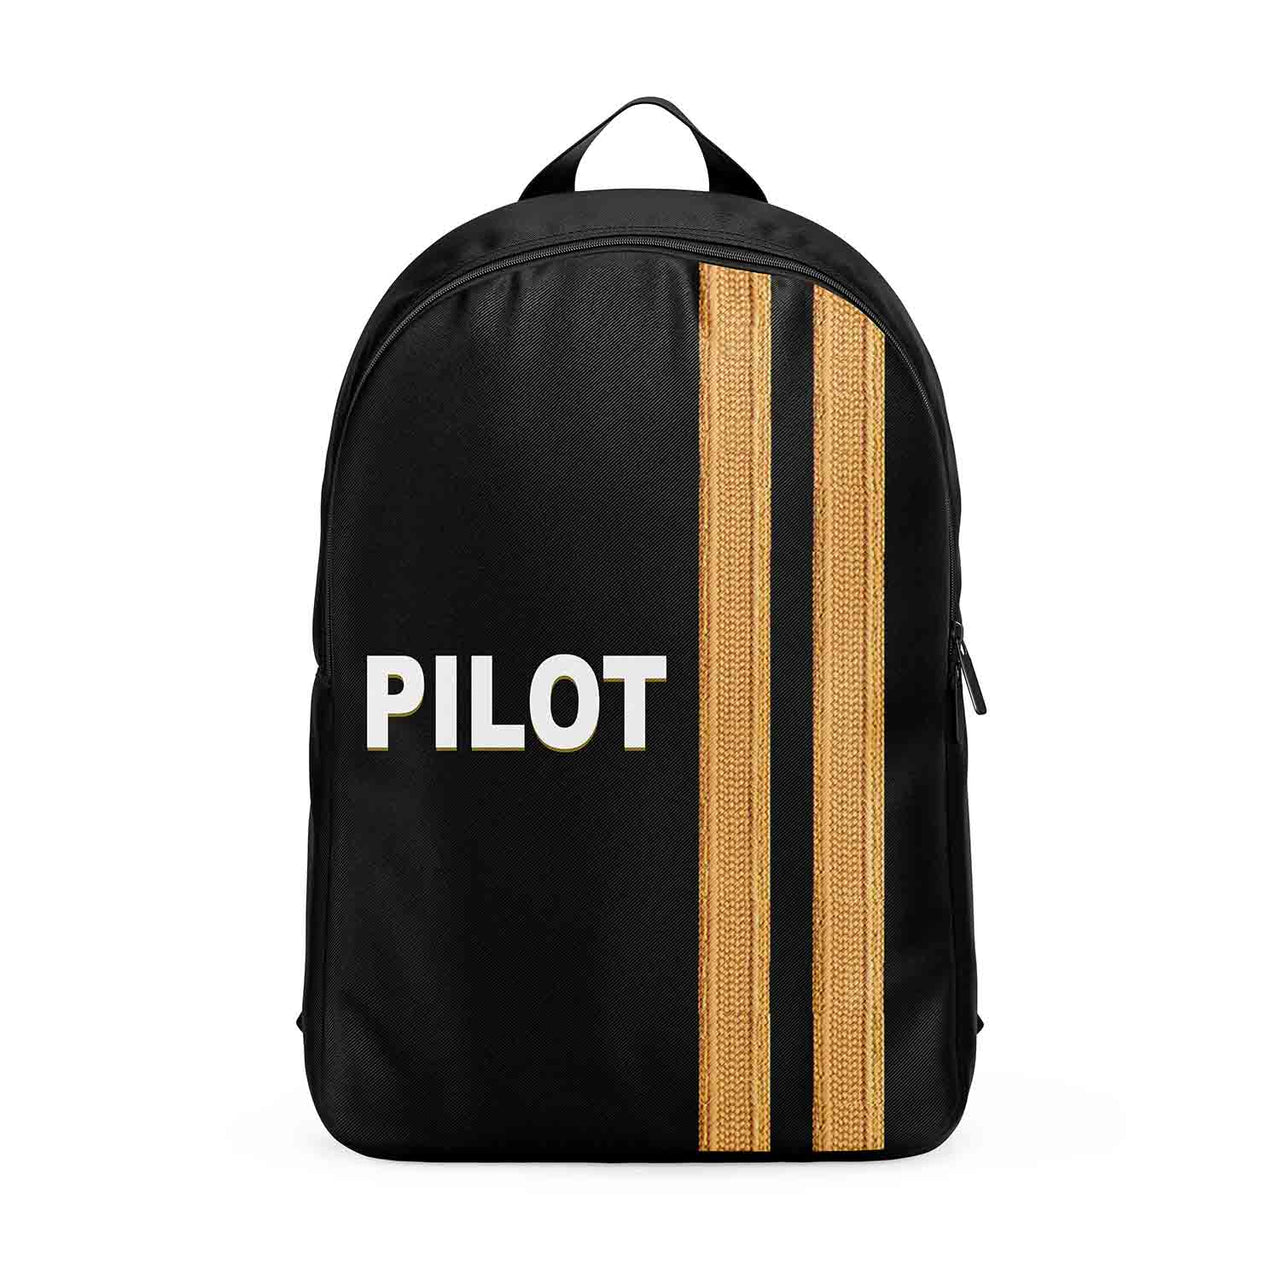 PILOT & Epaulettes 2 Lines Designed Backpacks